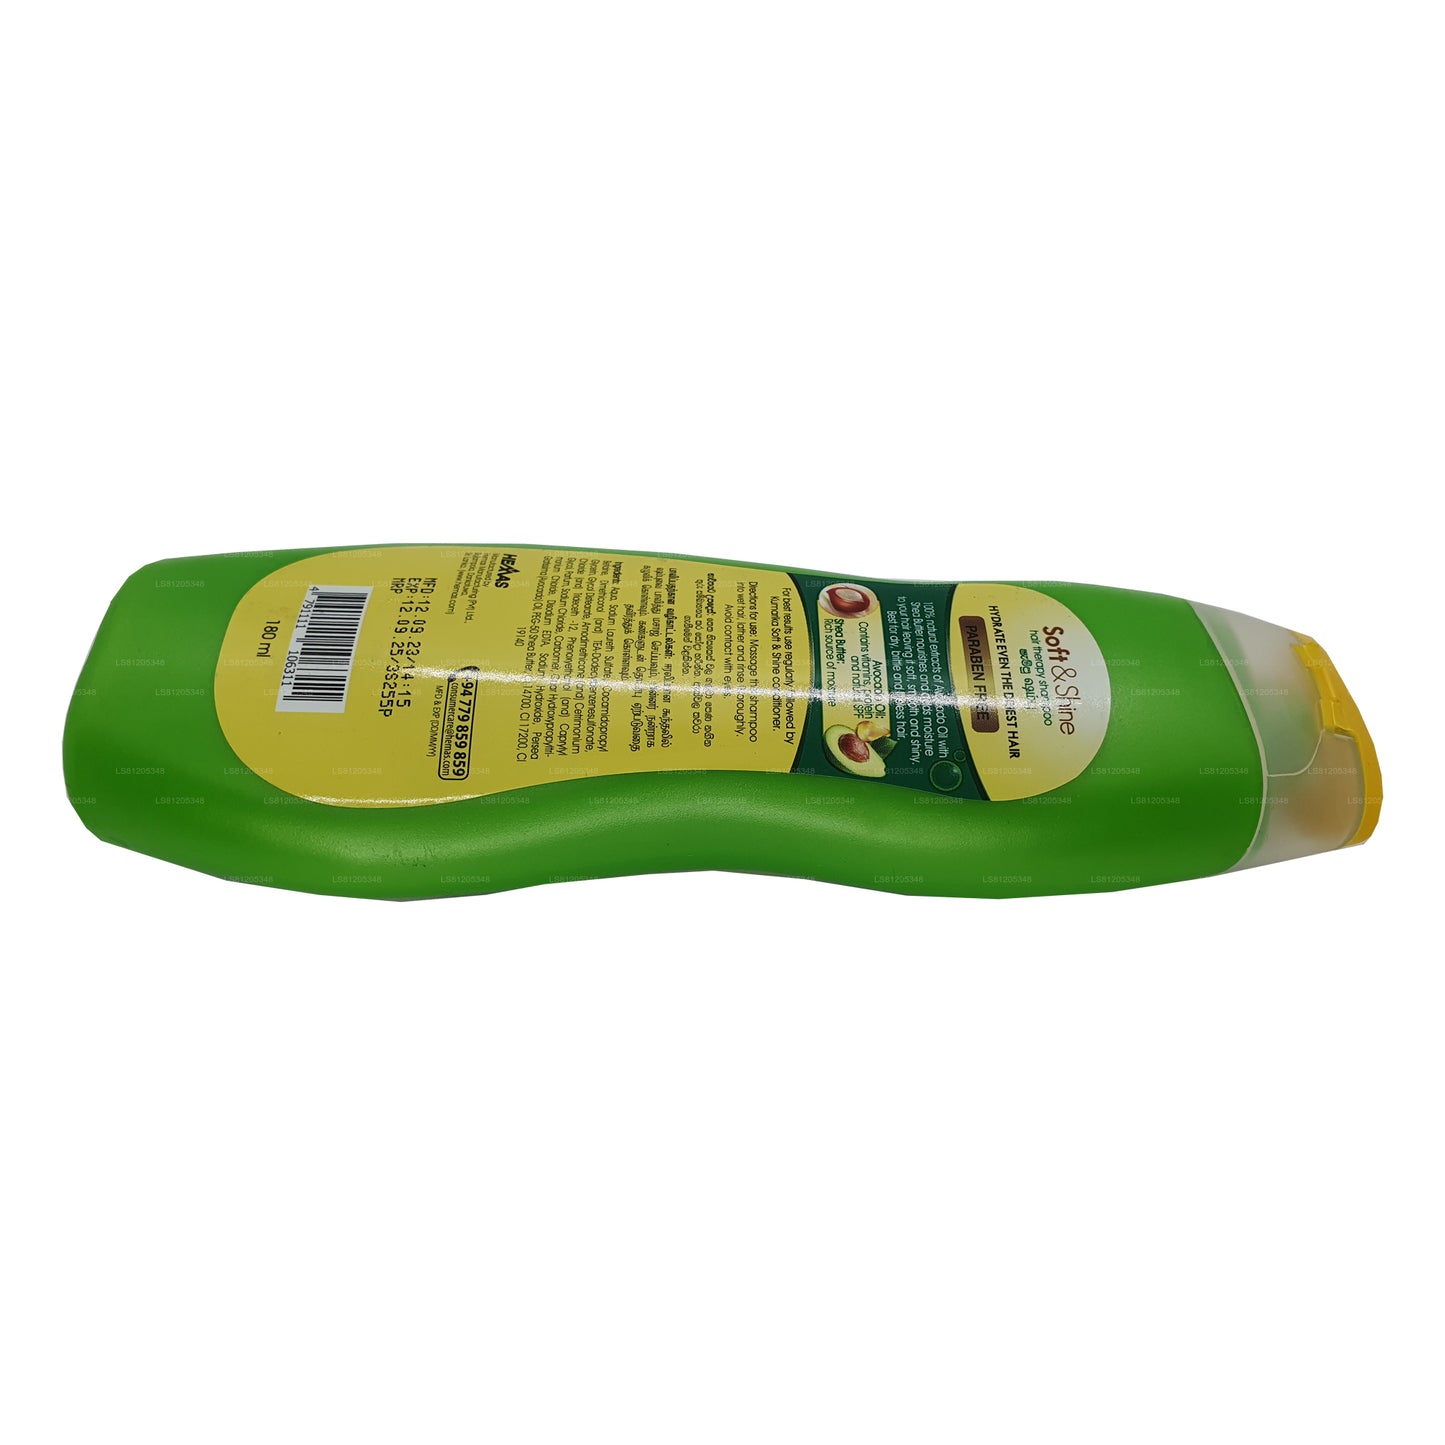 Kumarika shampoo voor zachte en glanzende haartherapie (180 ml)